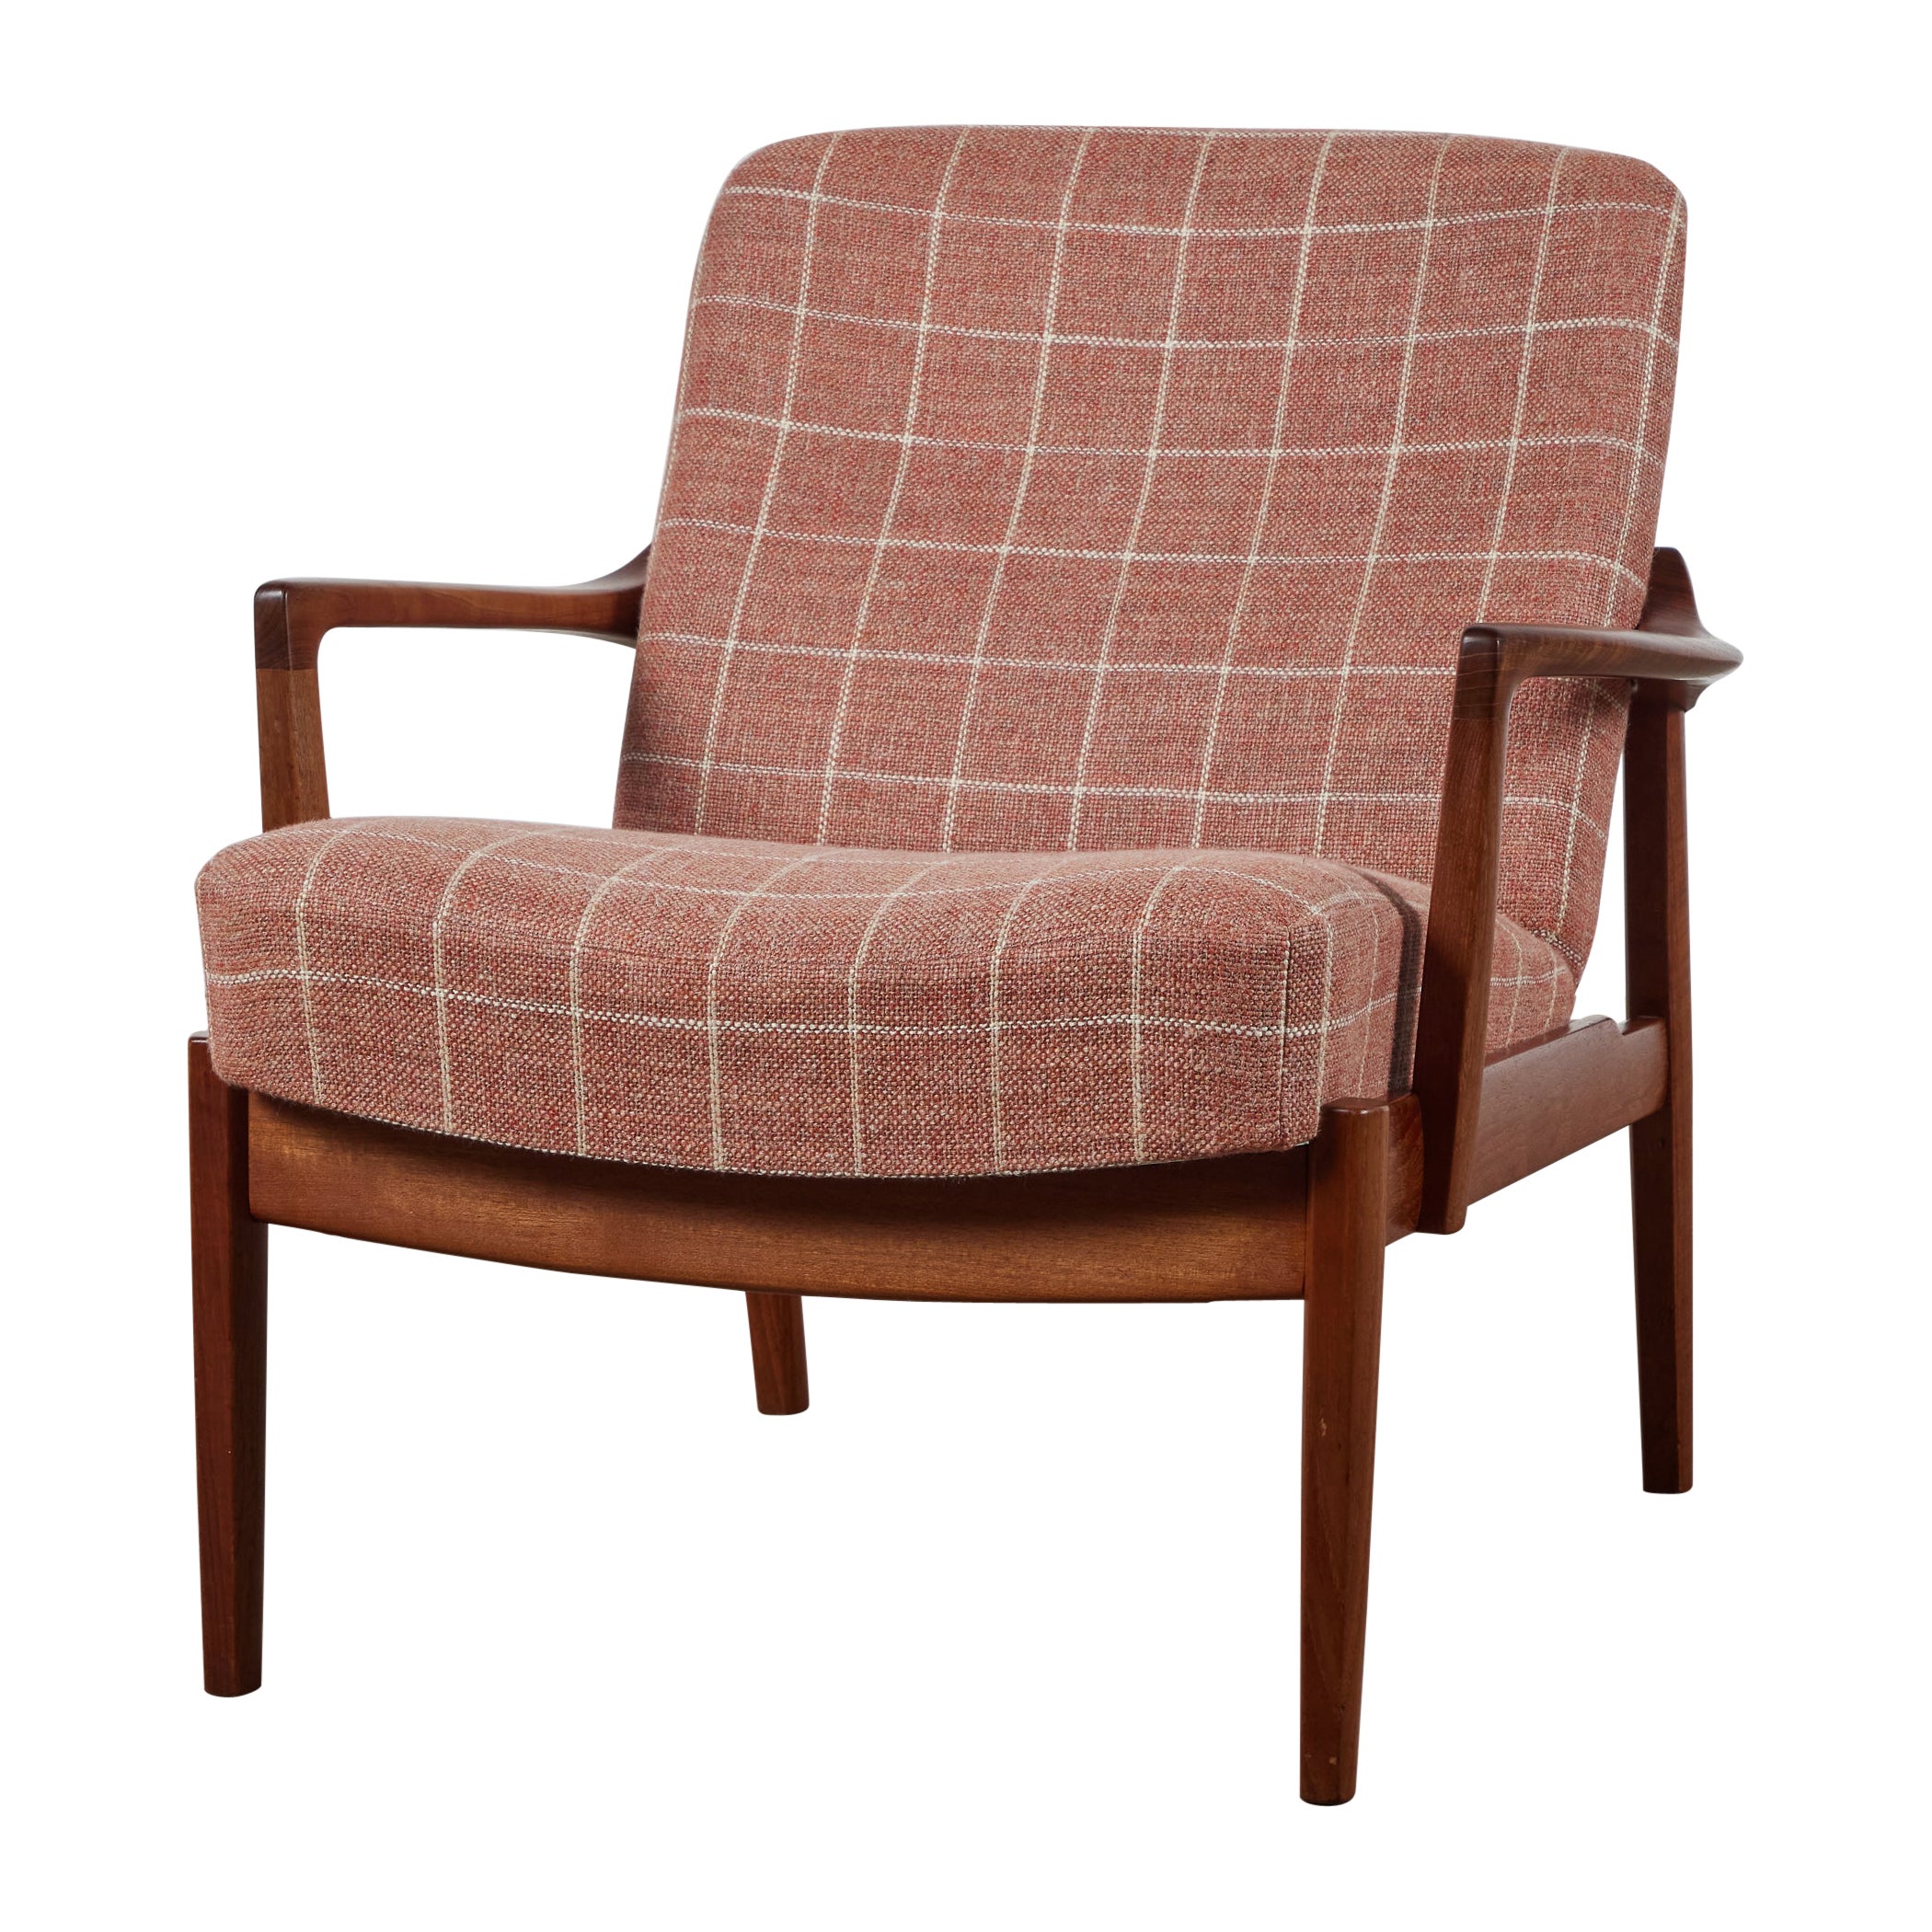 Tove & Edvard Kindt-Larsen "Model 125" Lounge Chair for France & Son For Sale